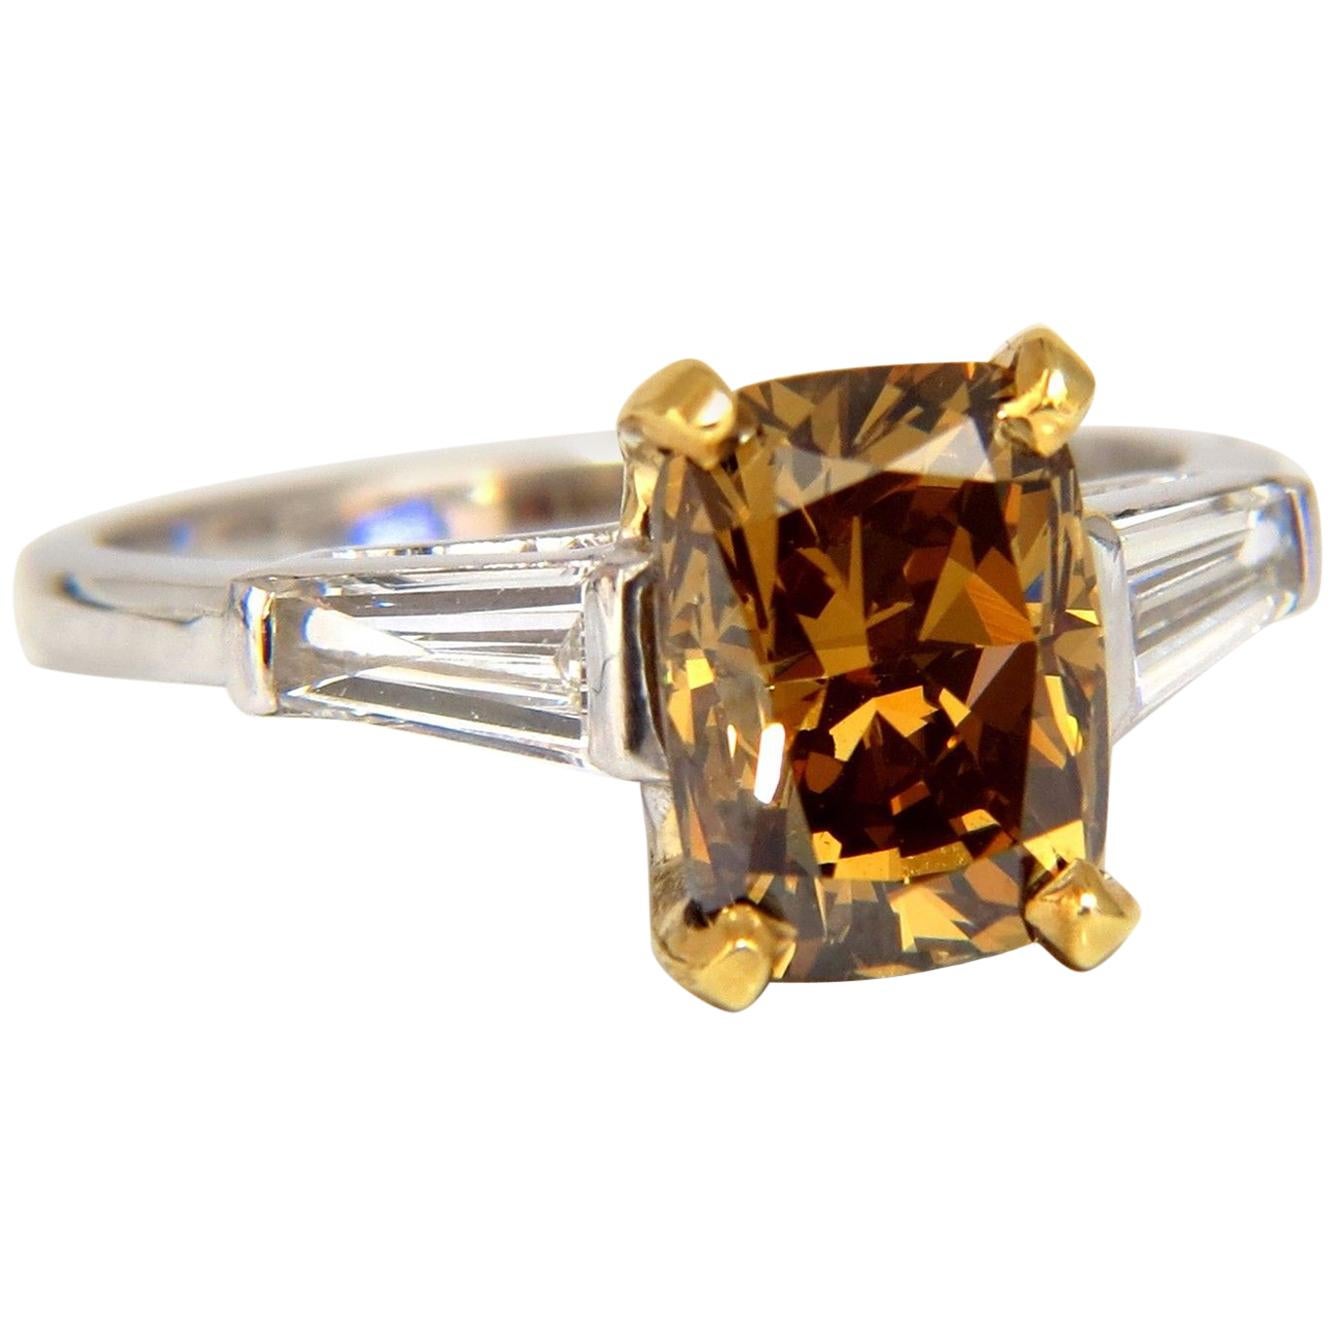 GIA Certified 2.59 Carat Fancy Yellow Brown Diamond Ring Platinum